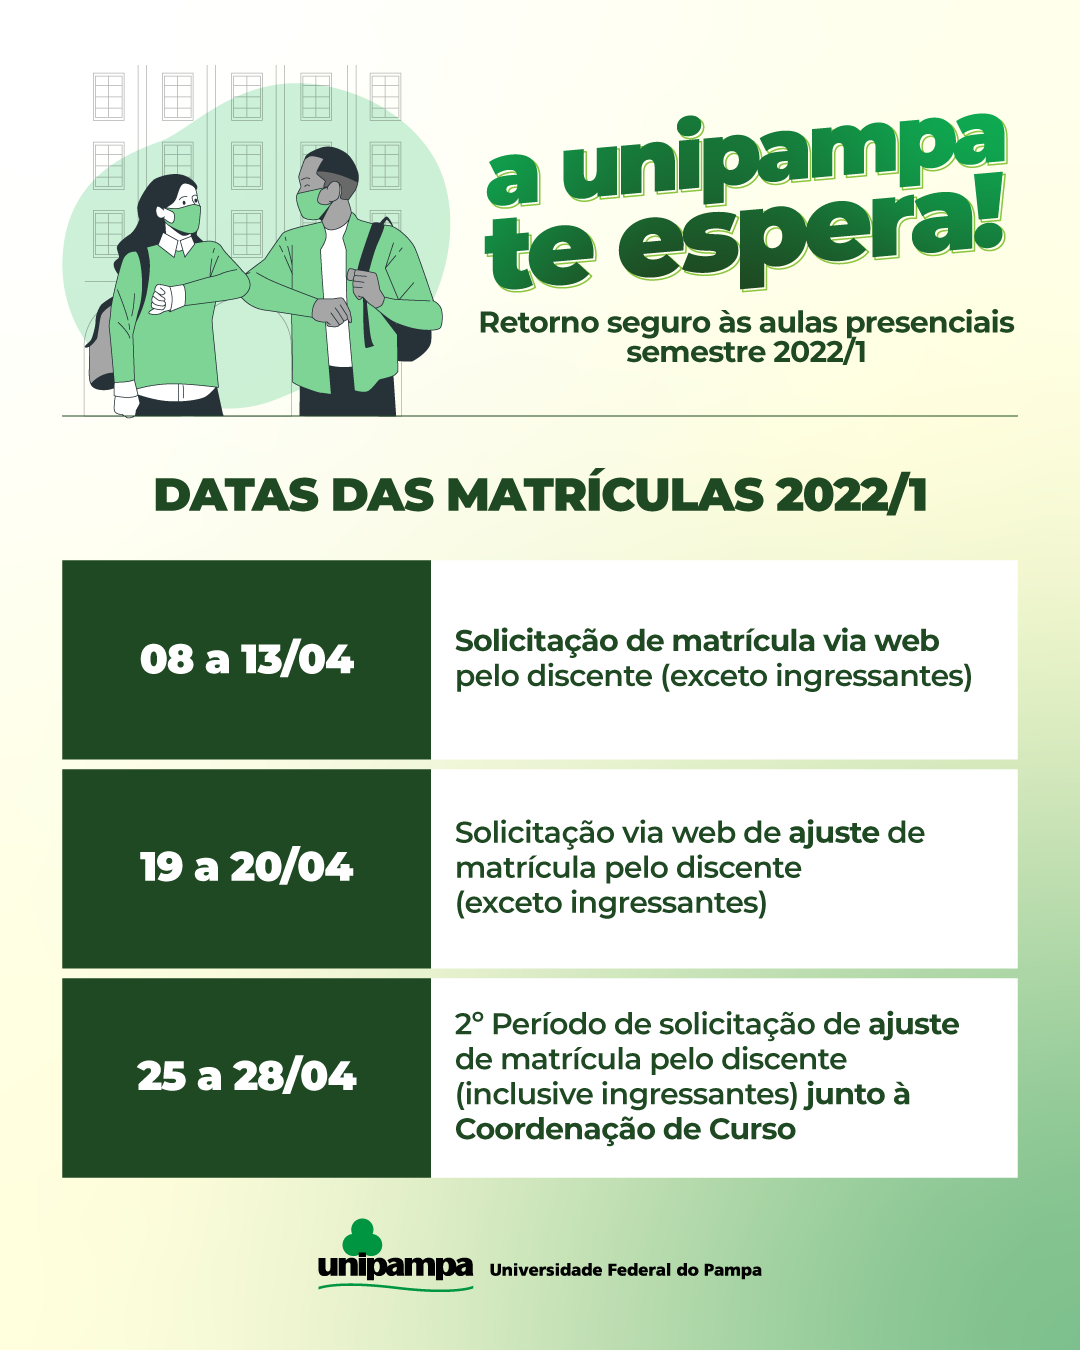 Confira as datas para solicitação de matrículas e ajustes 2022/1